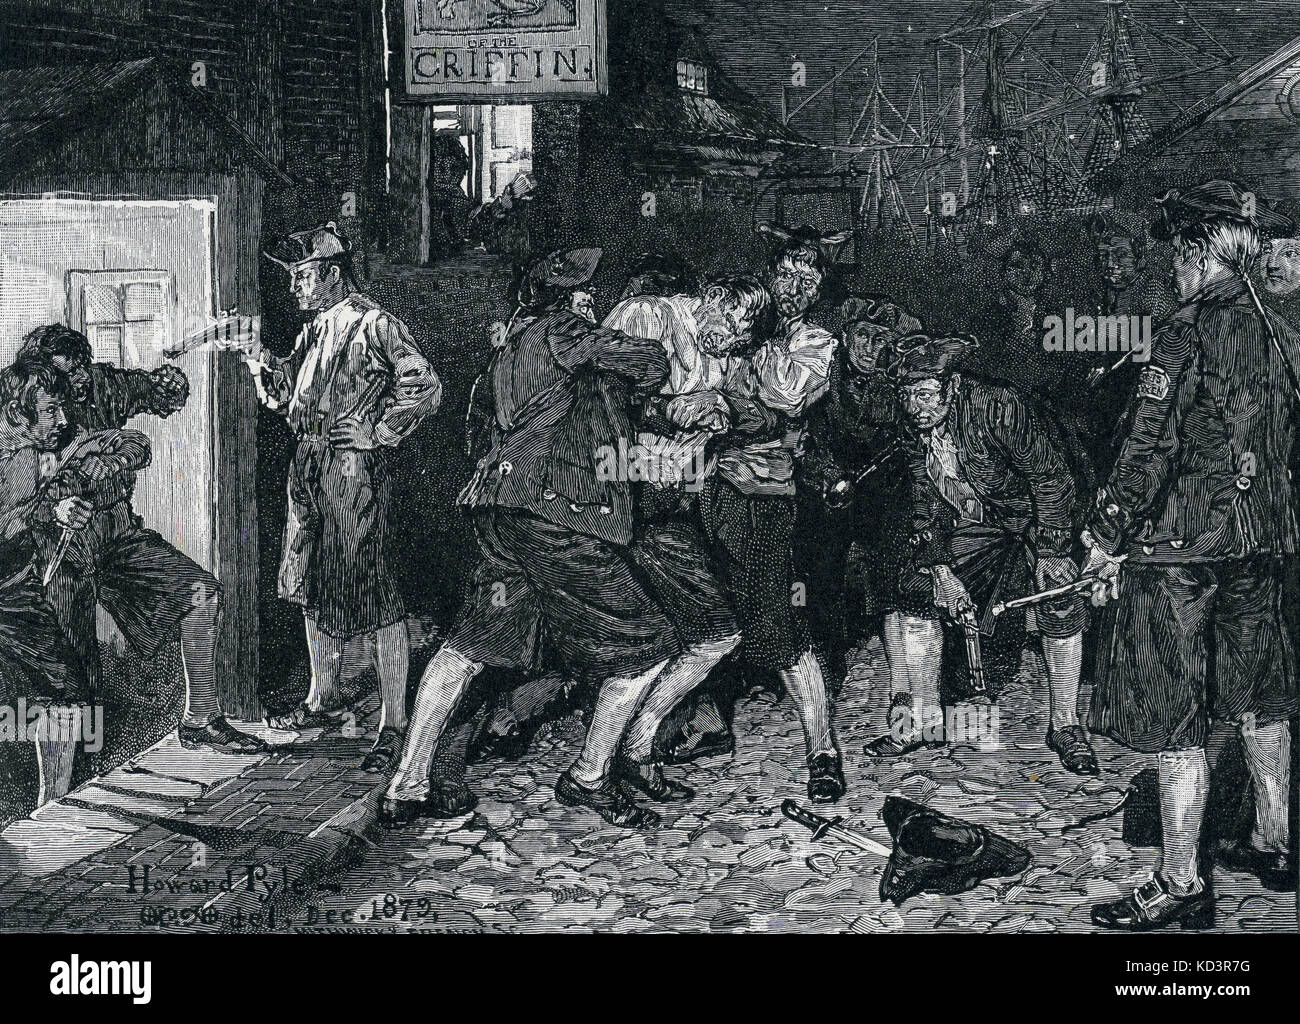 Presse-Bande, New York unter britischer Kolonialherrschaft, 1757, während des Siebenjährigen Krieges. Illustration von Howard Pyle, 1880 Stockfoto